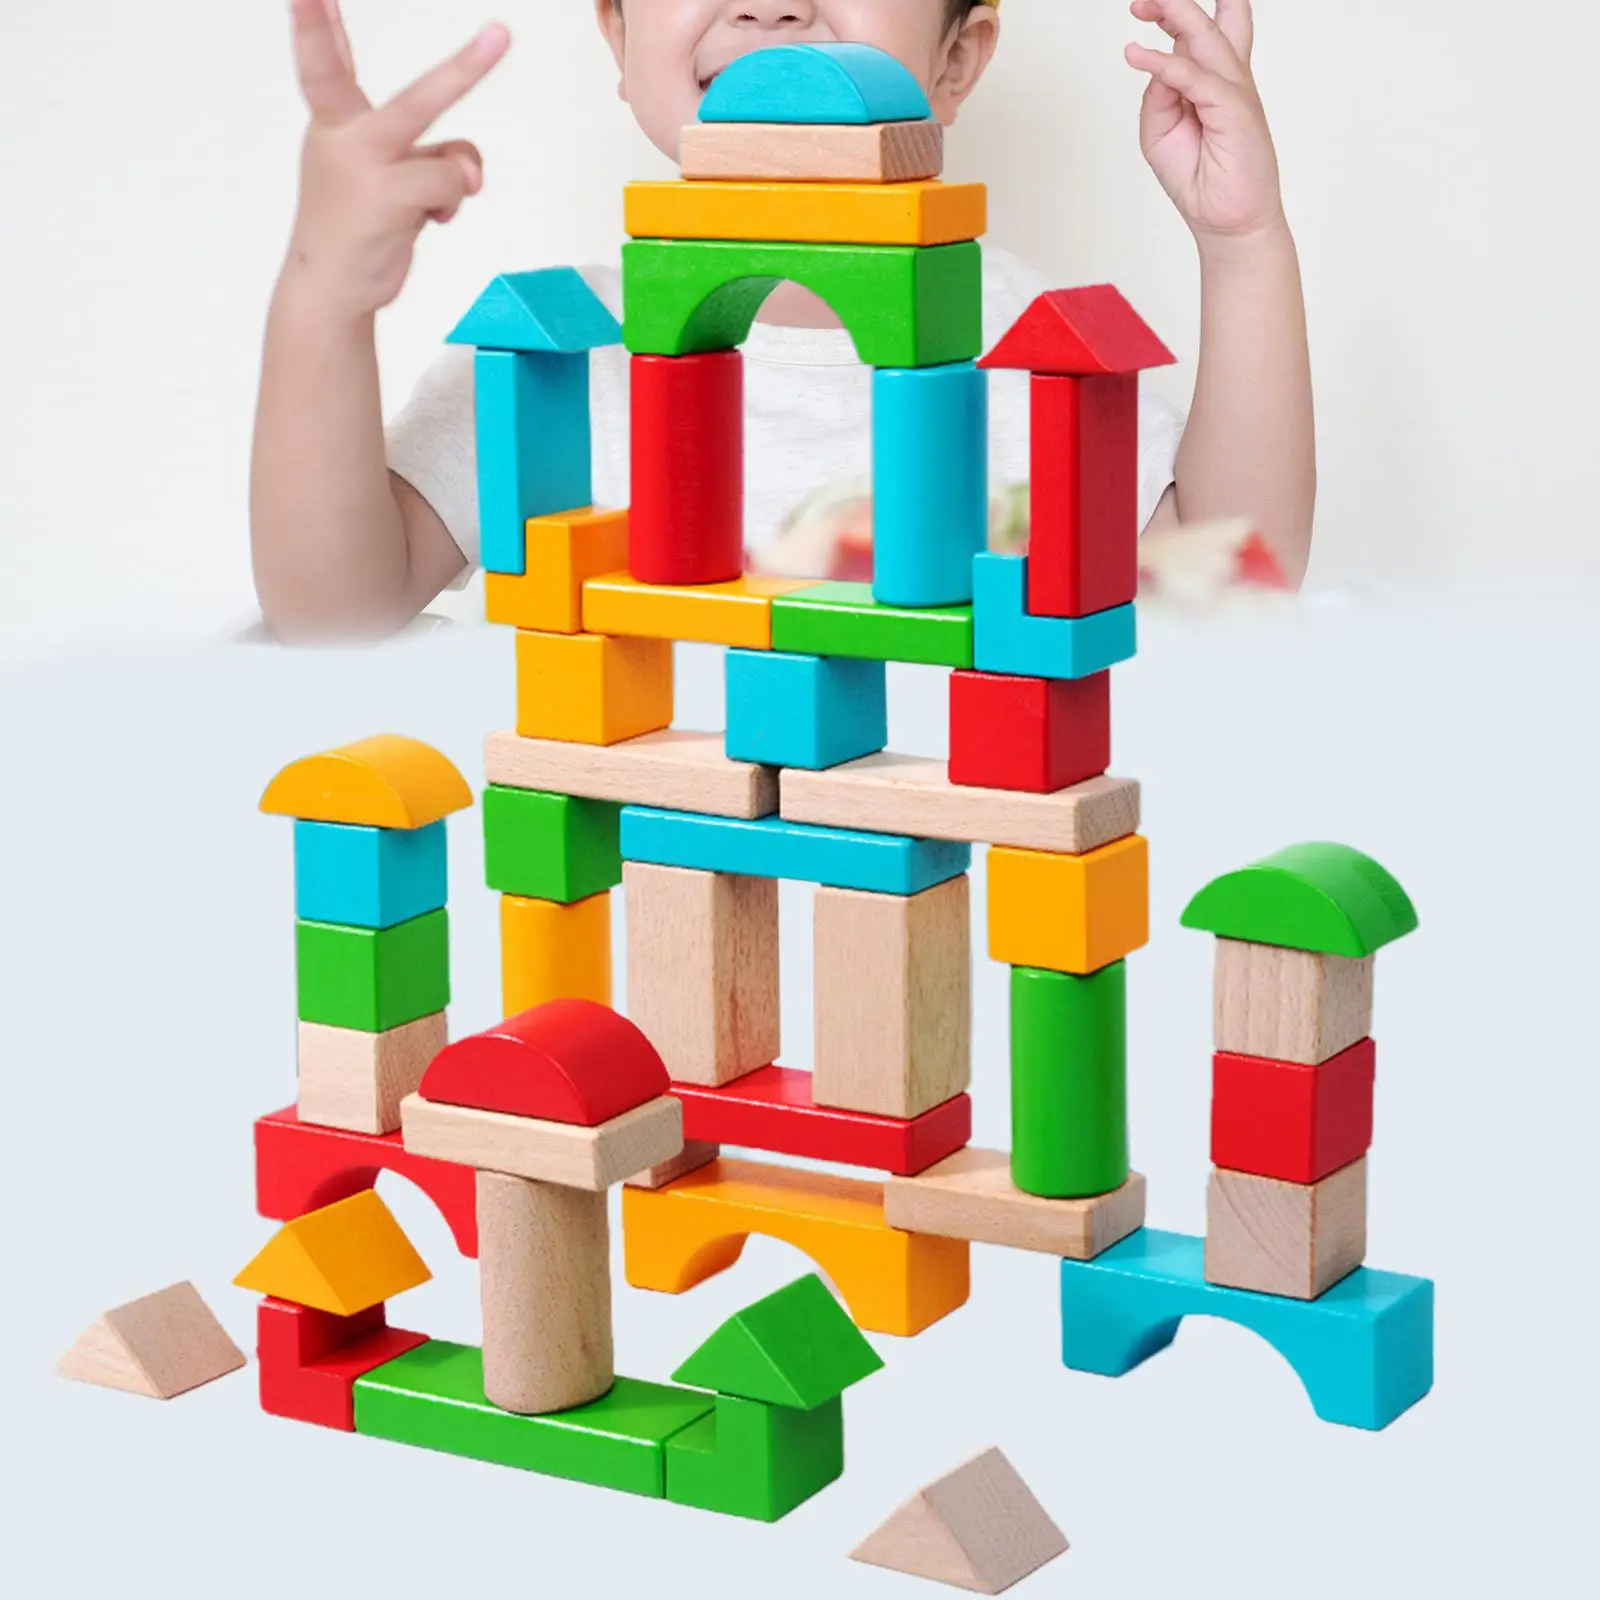 Геометрические фигуры Деревянные мини Строительные кирпичики Геометрия для детей Геометрическая обучающая игрушка для обучения манипуляциям в классе